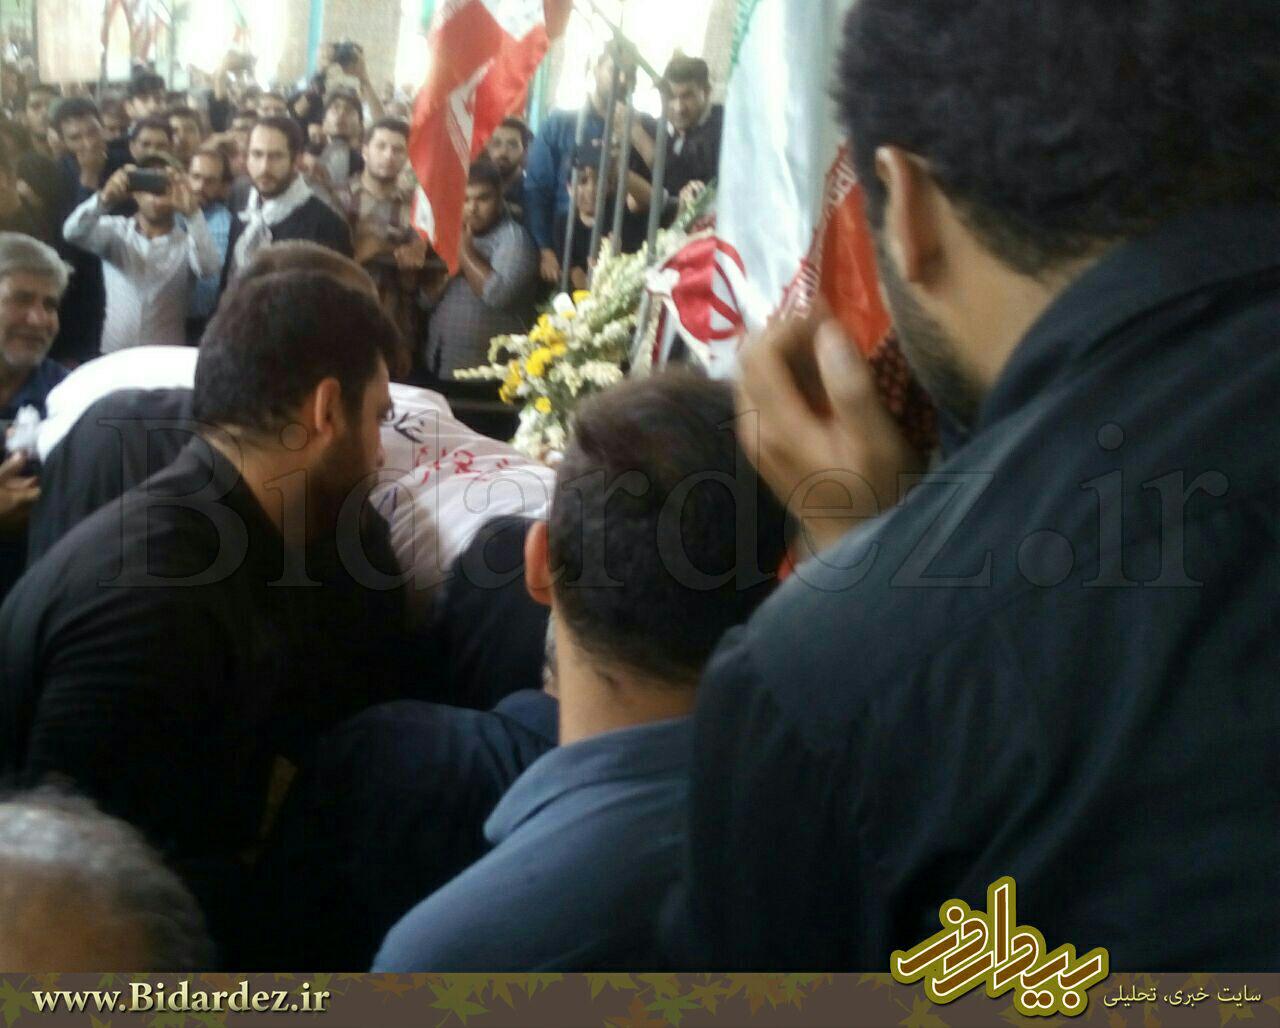 تشیع و خاکسپاری  شهید غلامحسین دیمی و شهید گمنام در دزفول+تصاویر